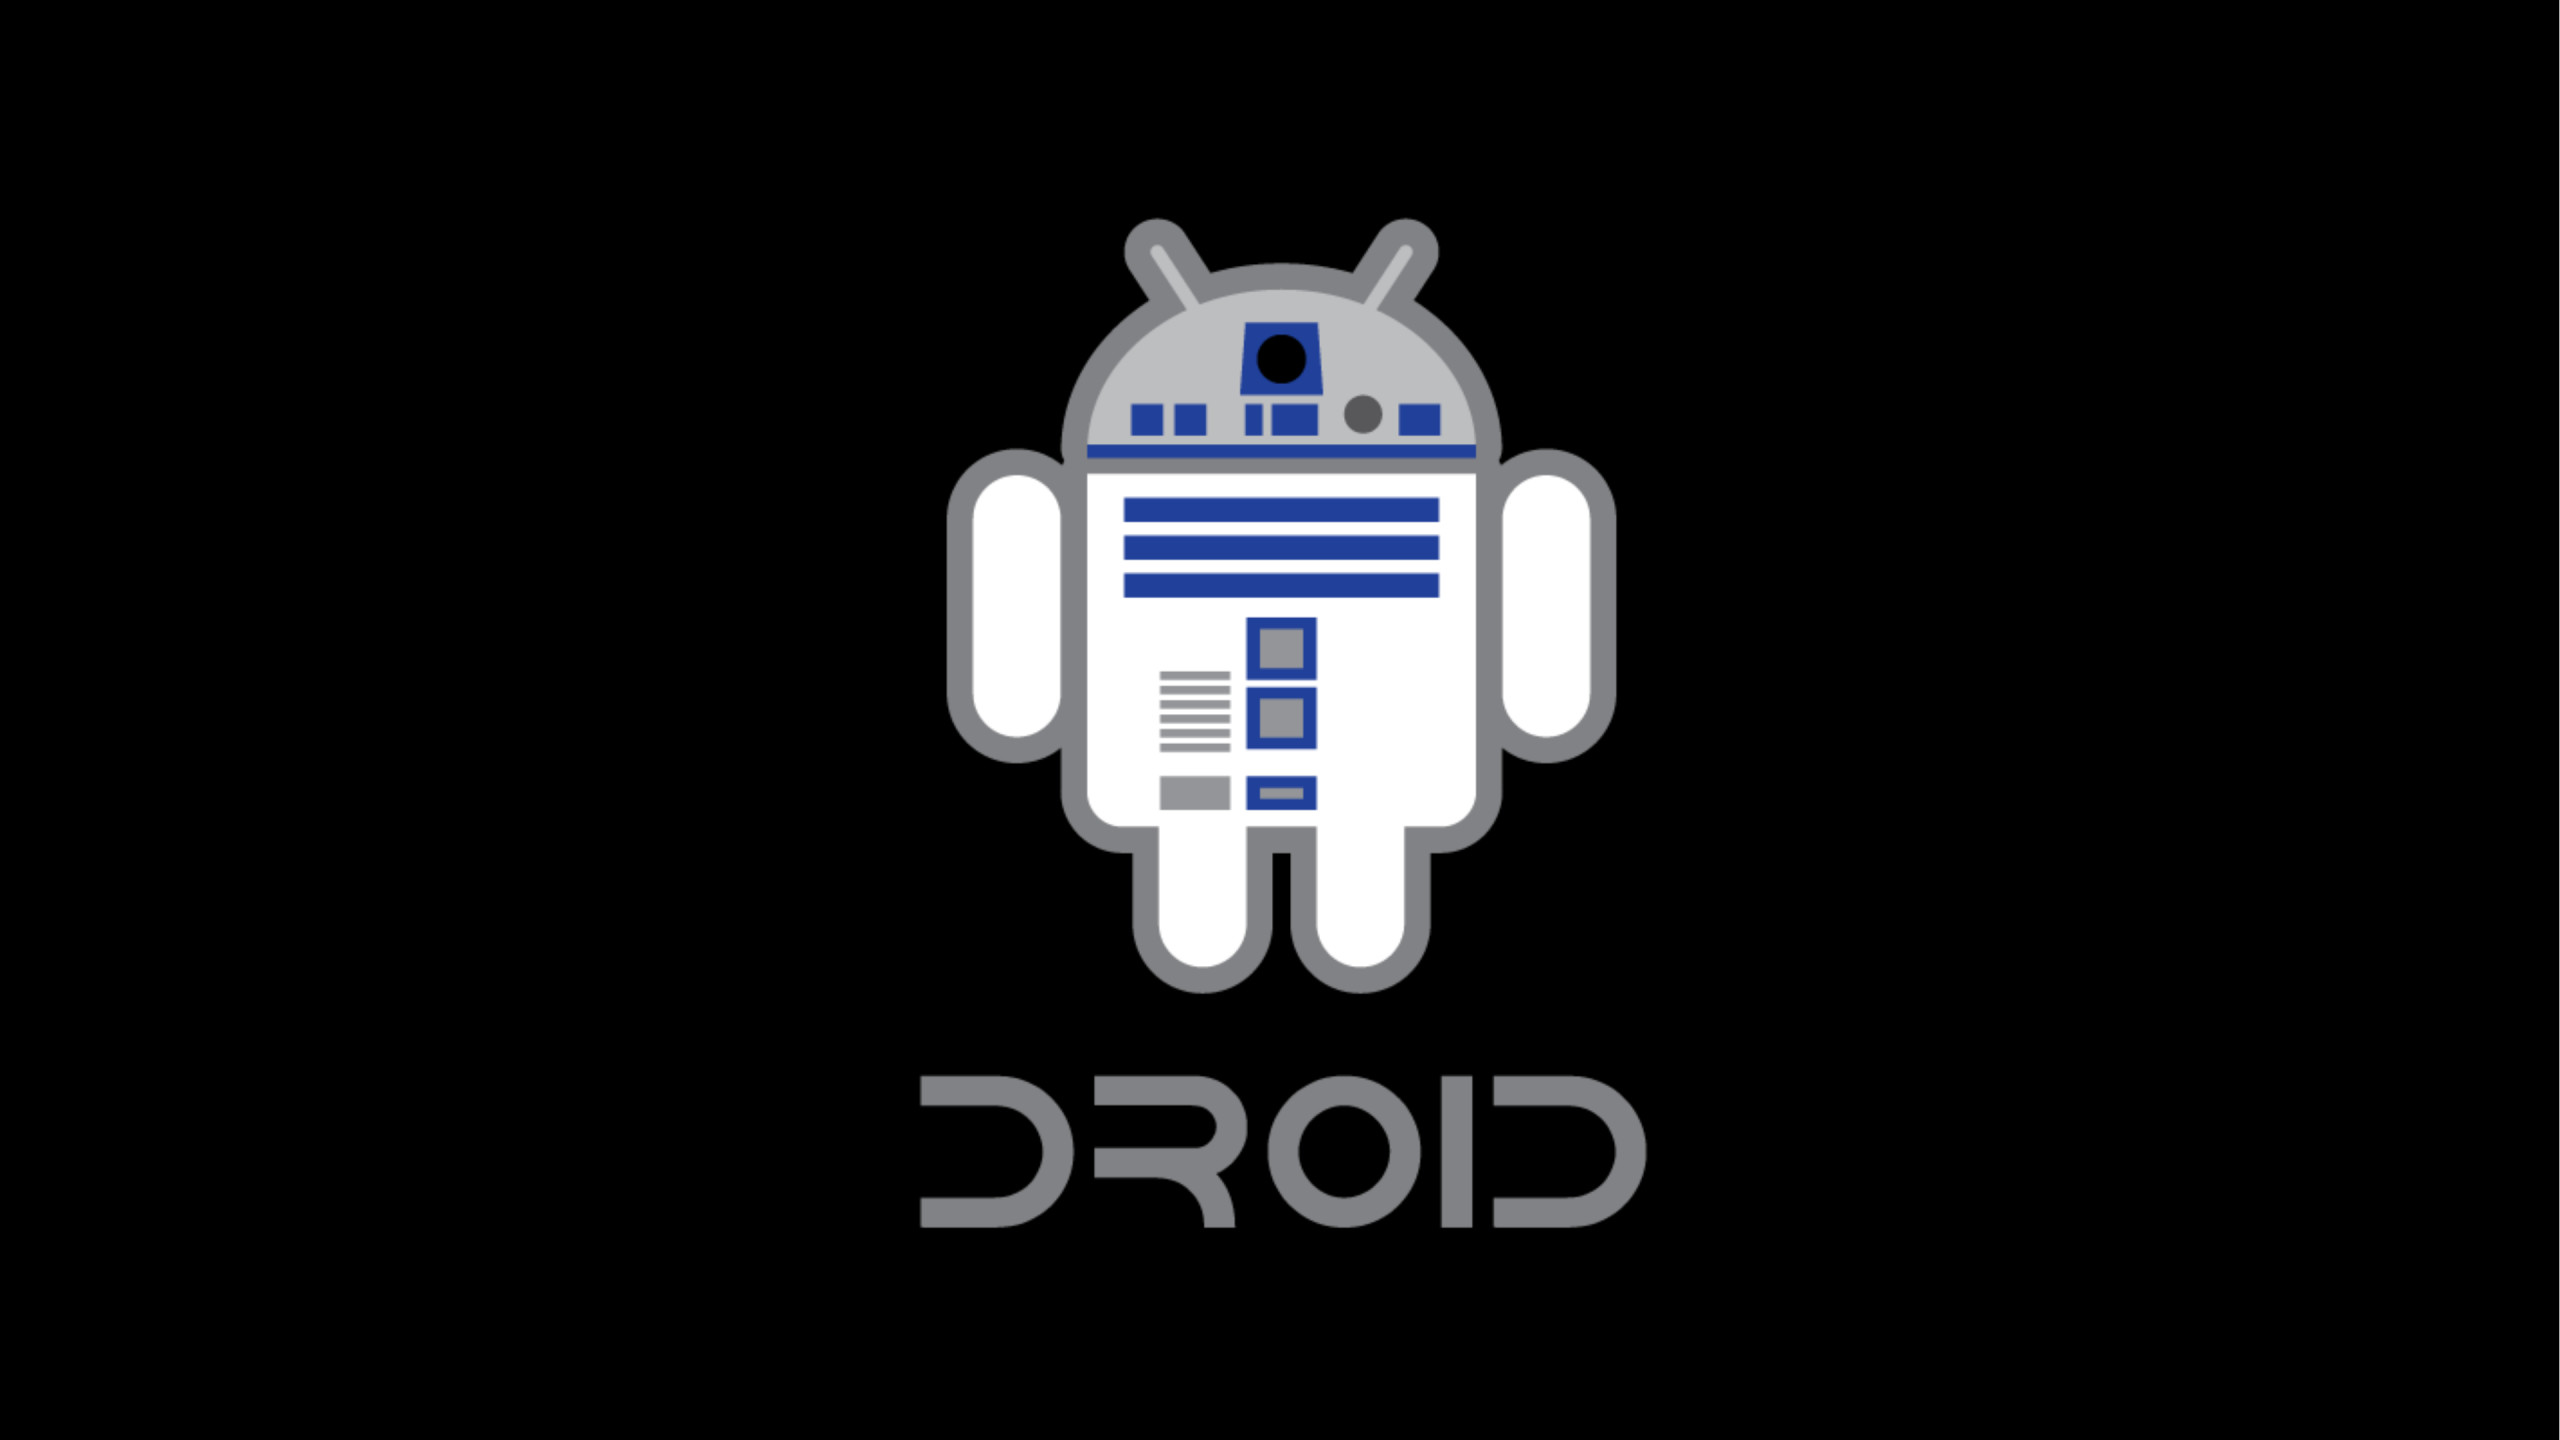 Star Wars Android Logo 4K Wallpaper 2560×1440